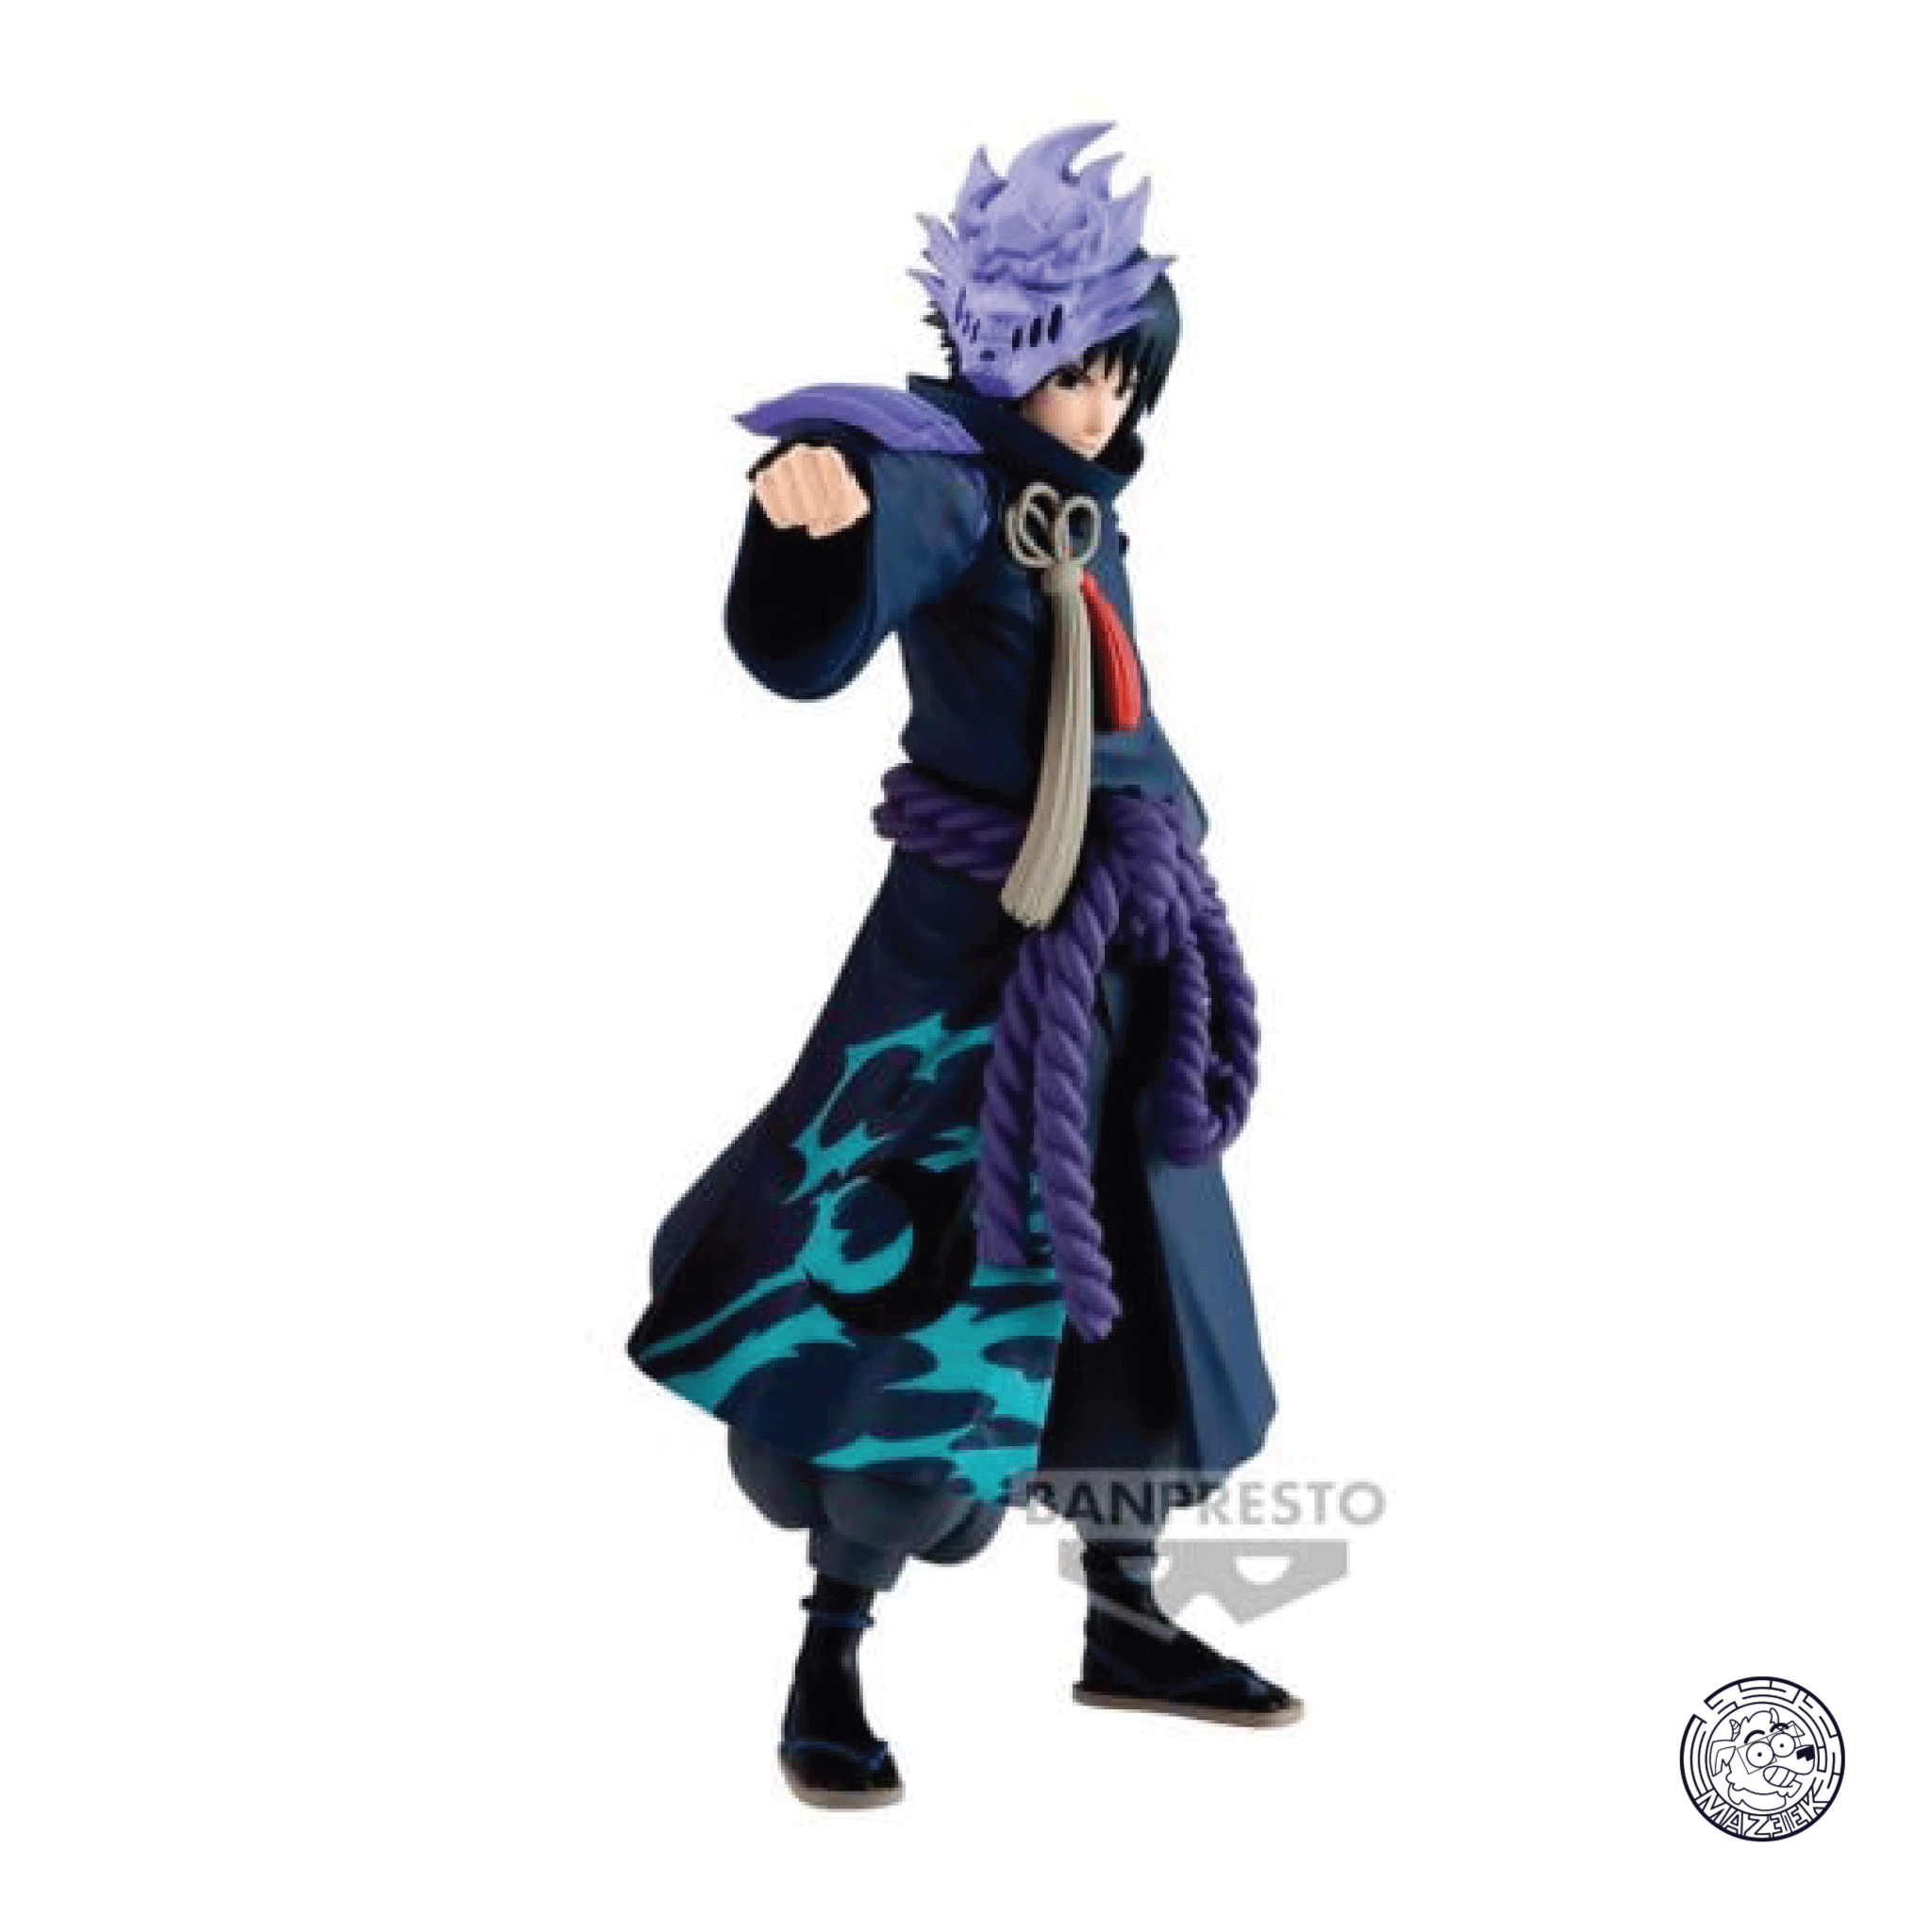 Figure! 20th Anniversary Costume - Naruto Shippuden: Sasuke Uchiha